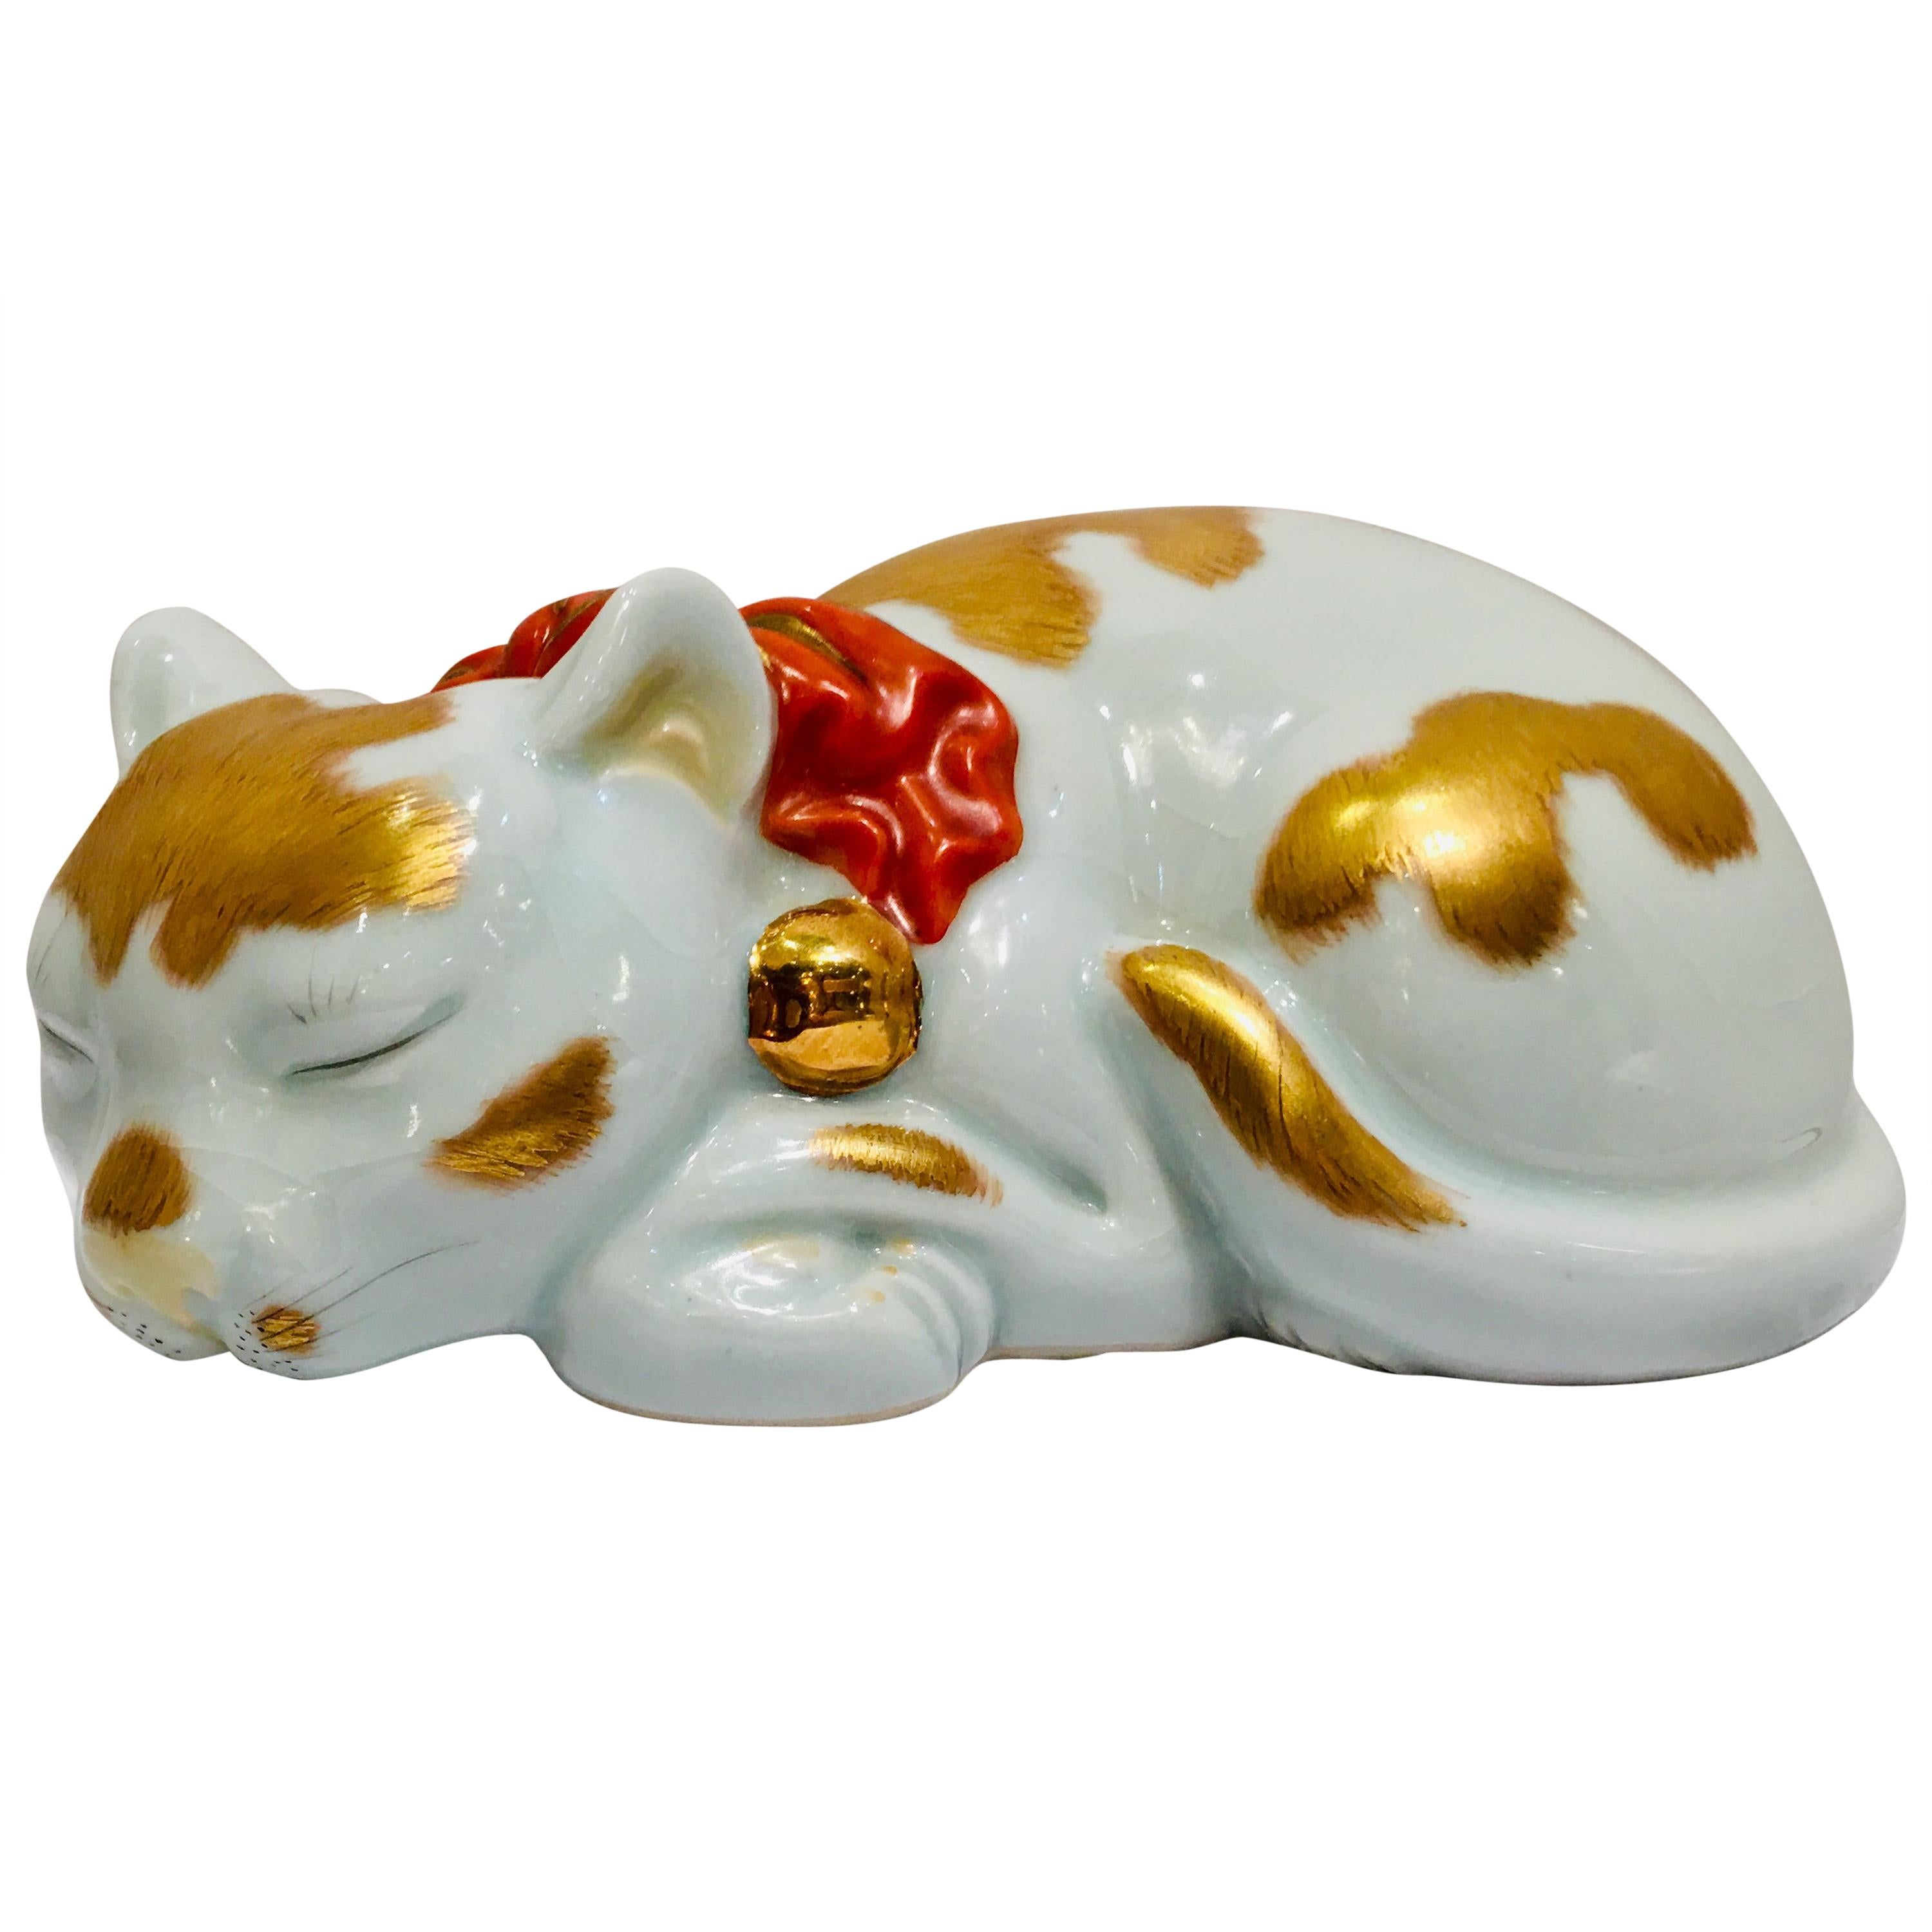 Kutani Japanese Porcelain Small Sleeping Cat circa 1920s Handmade Hand Painted